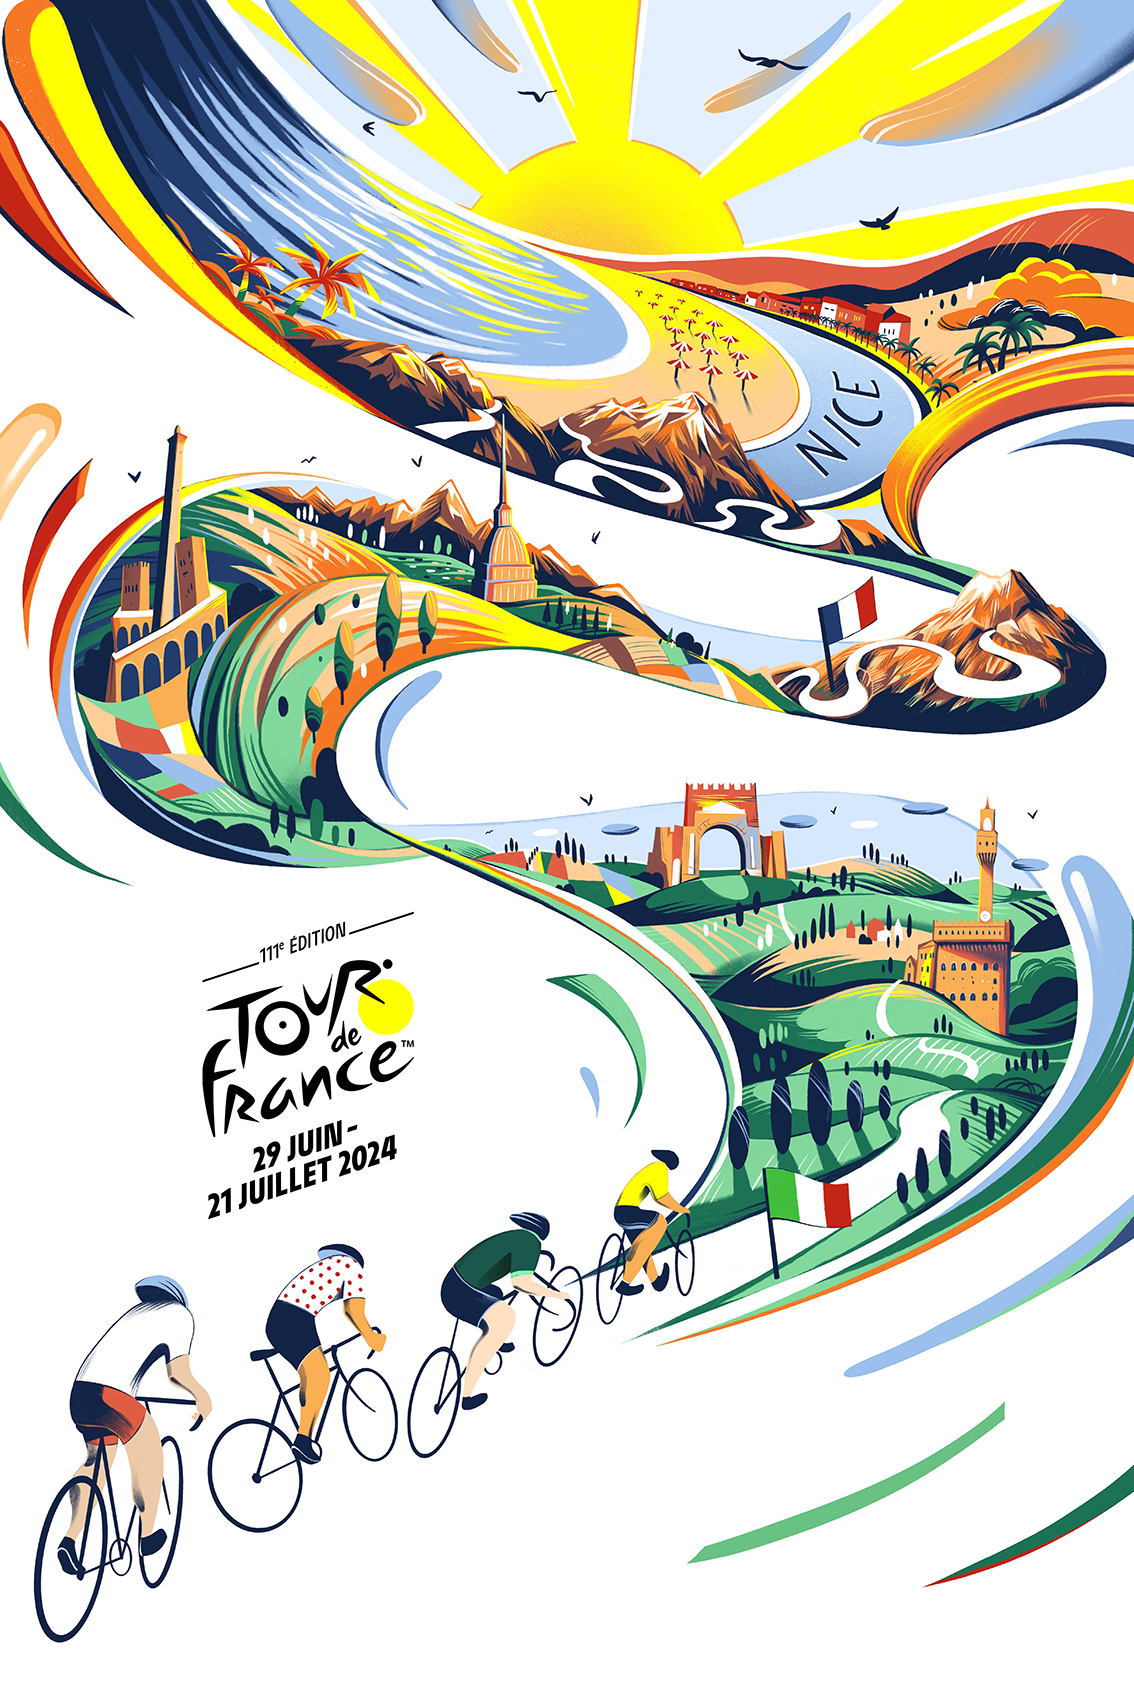 Scopri l’affiche del Tour de France 2024 qui incontrato l’onore di Nice et l’Italie